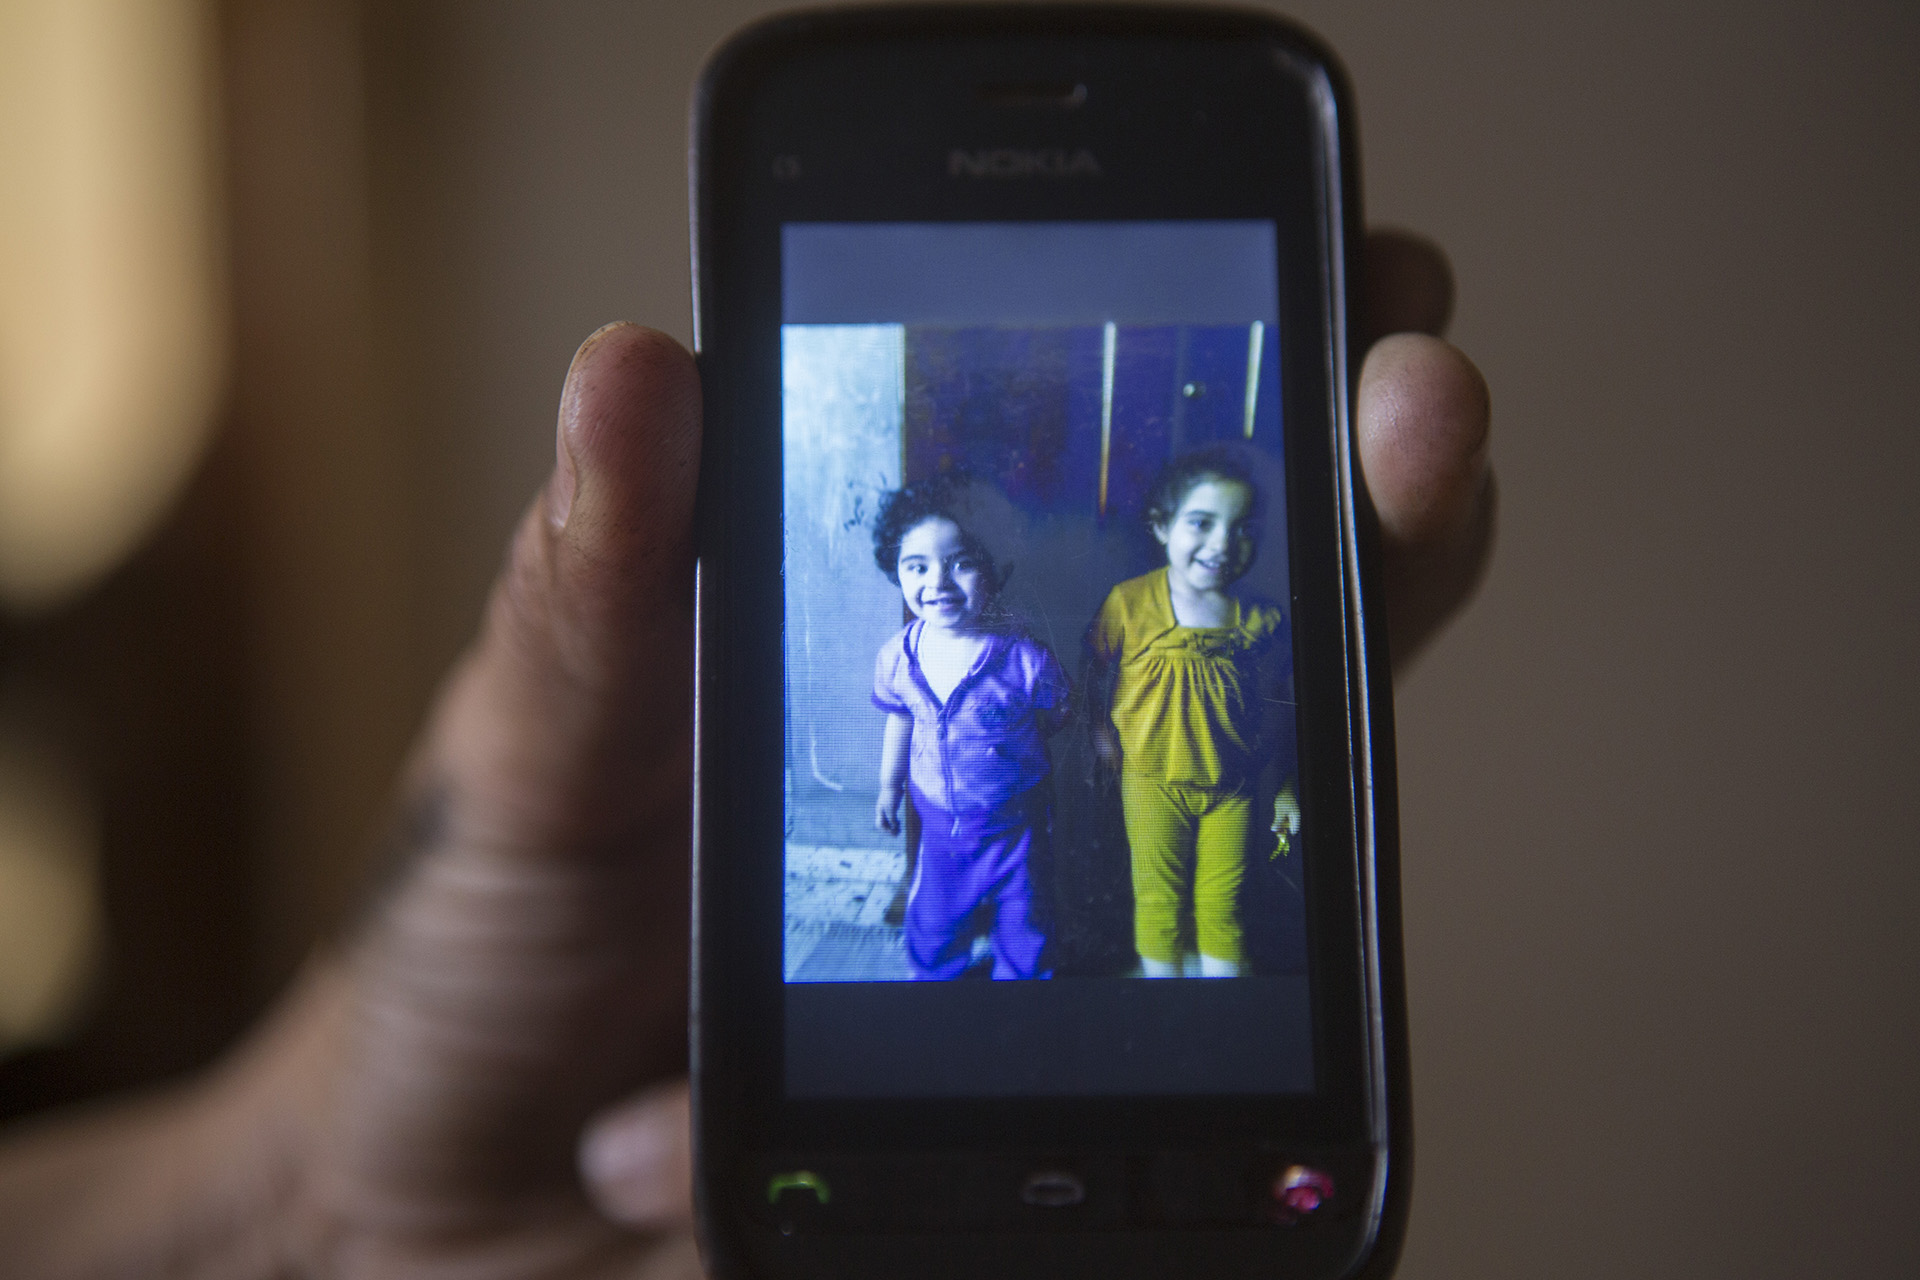 صور هلا وجنى بنات أخو محمود واللي انقتلو مع أبوهم وأمهم في ضربة قصف جوي إسرائيلي على بيت عيلة ماضي.
